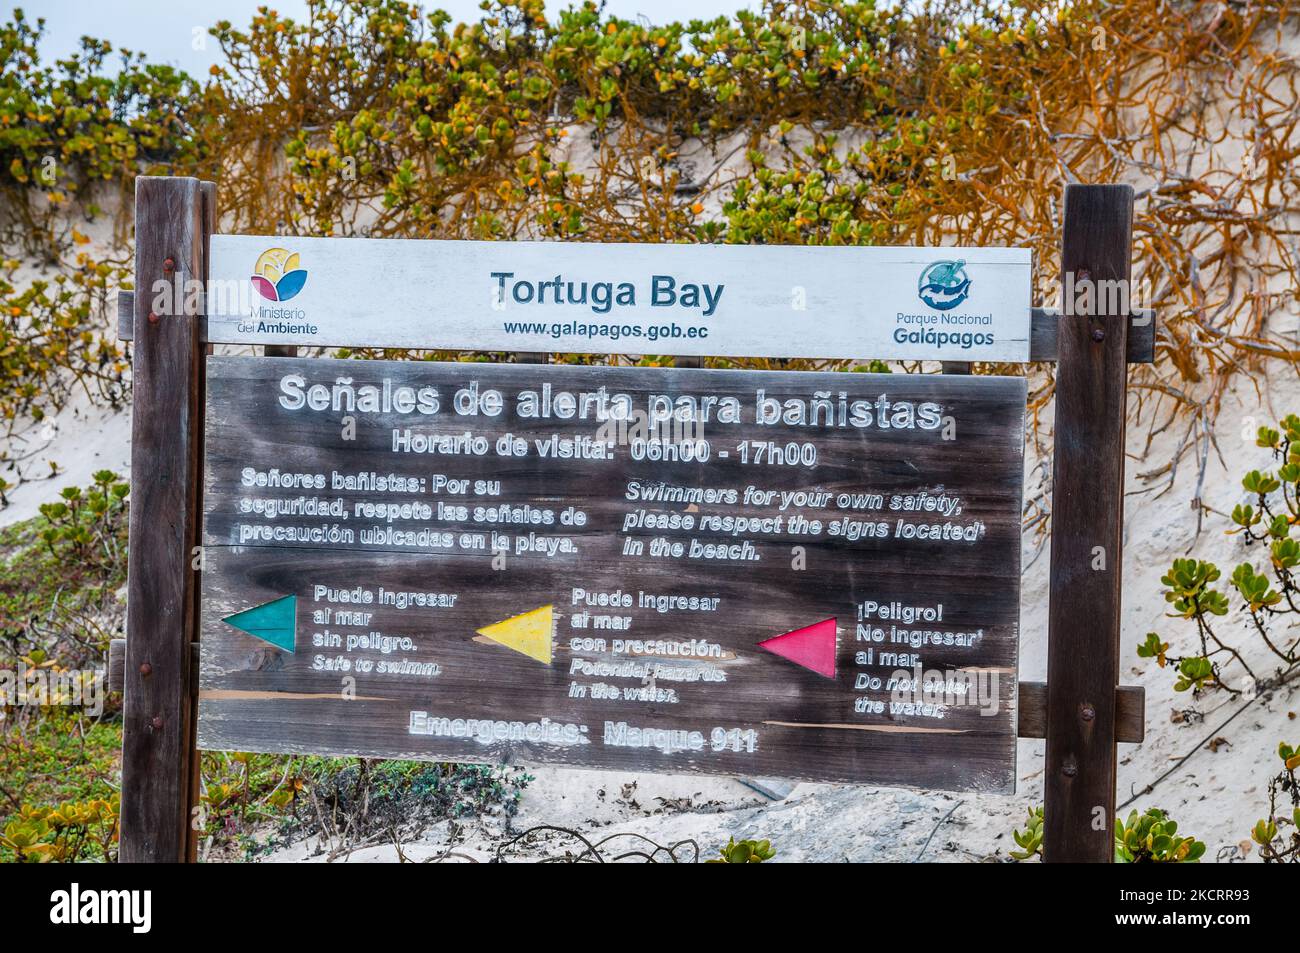 Swimmers safety signals, Tortuga Bay, October, Santa Cruz, Galapagos Islands Stock Photo